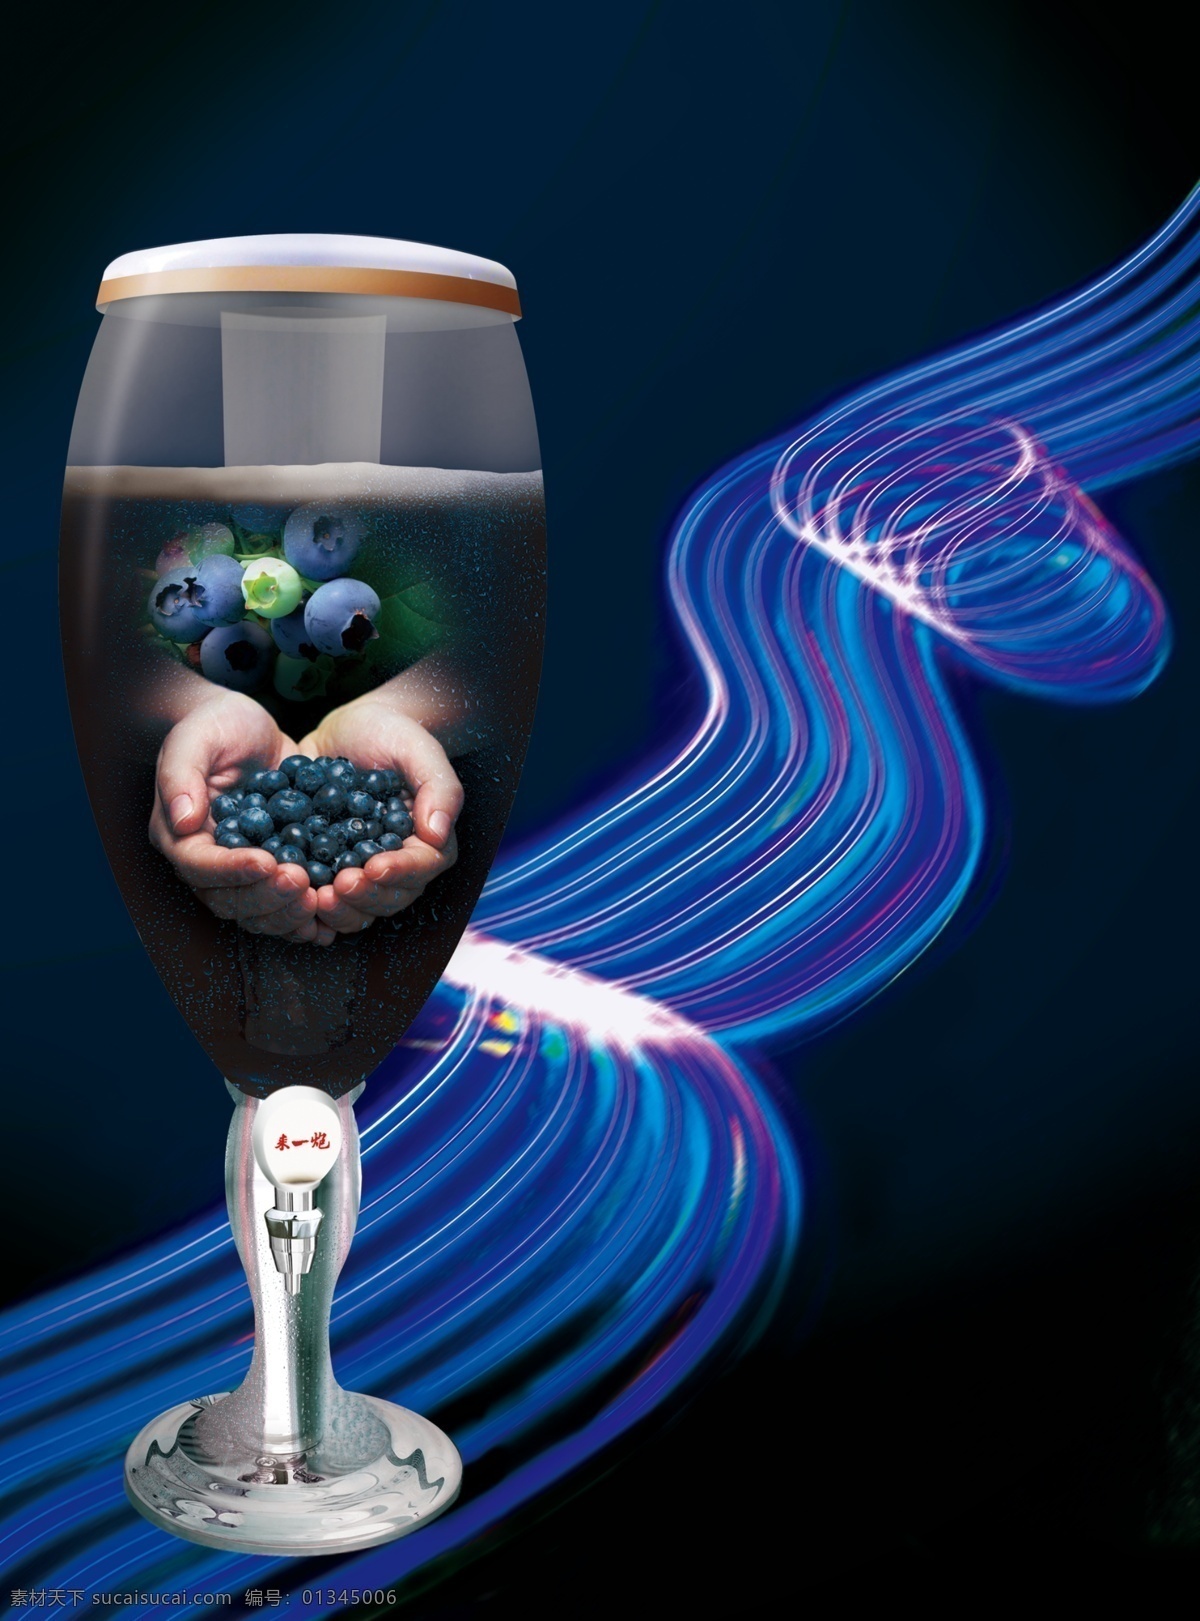 分层 酒杯 蓝莓 蓝色 线条 源文件 视觉 模板下载 蓝莓视觉 青岛啤酒花园 矢量图 日常生活